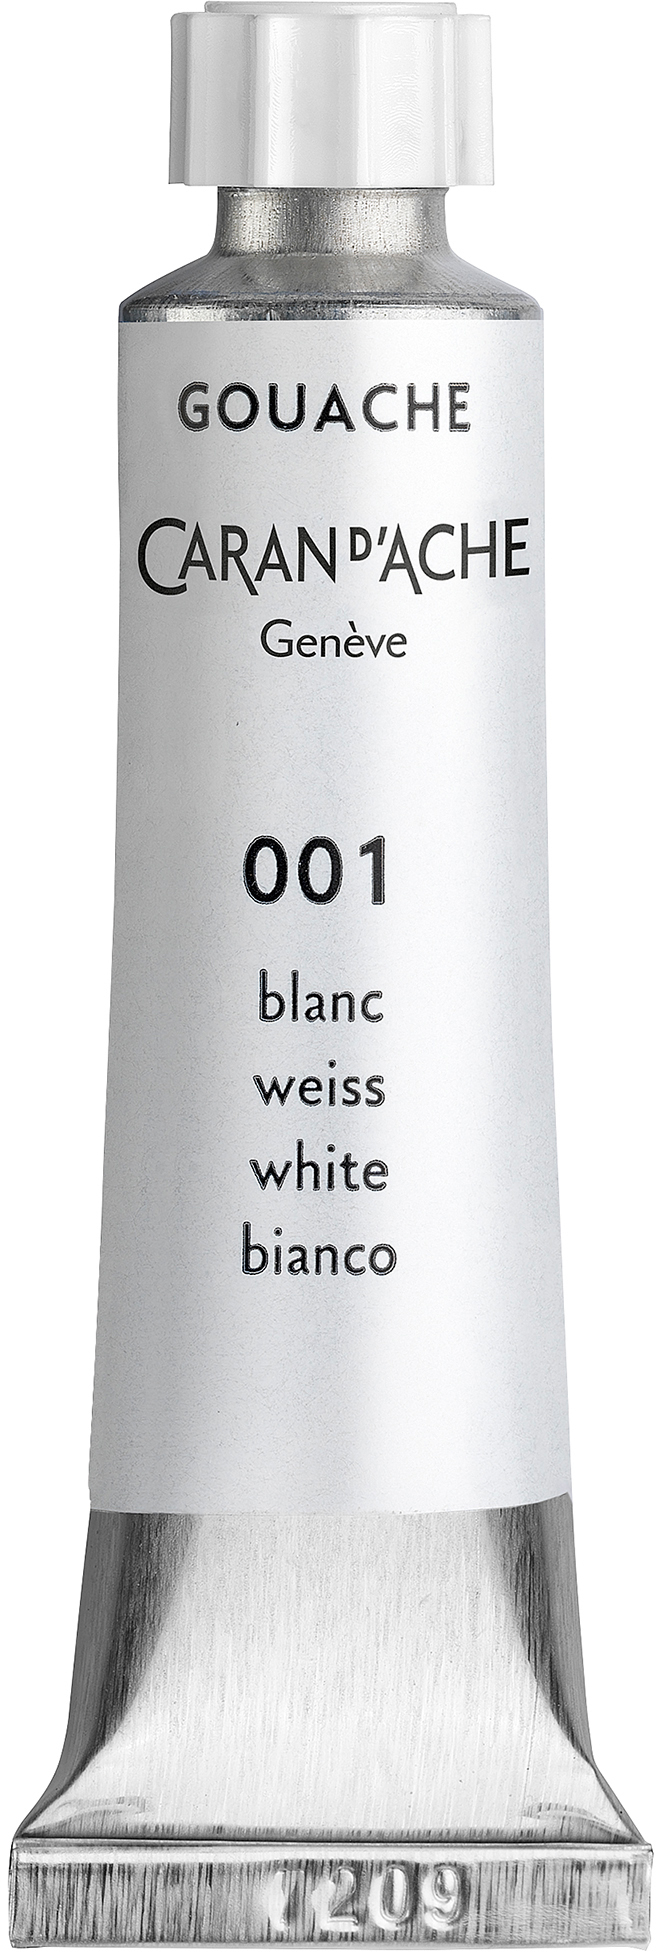 CARAN D'ACHE Couleur opaque Gouache 21ml 2100.001 blanc opaque blanc opaque